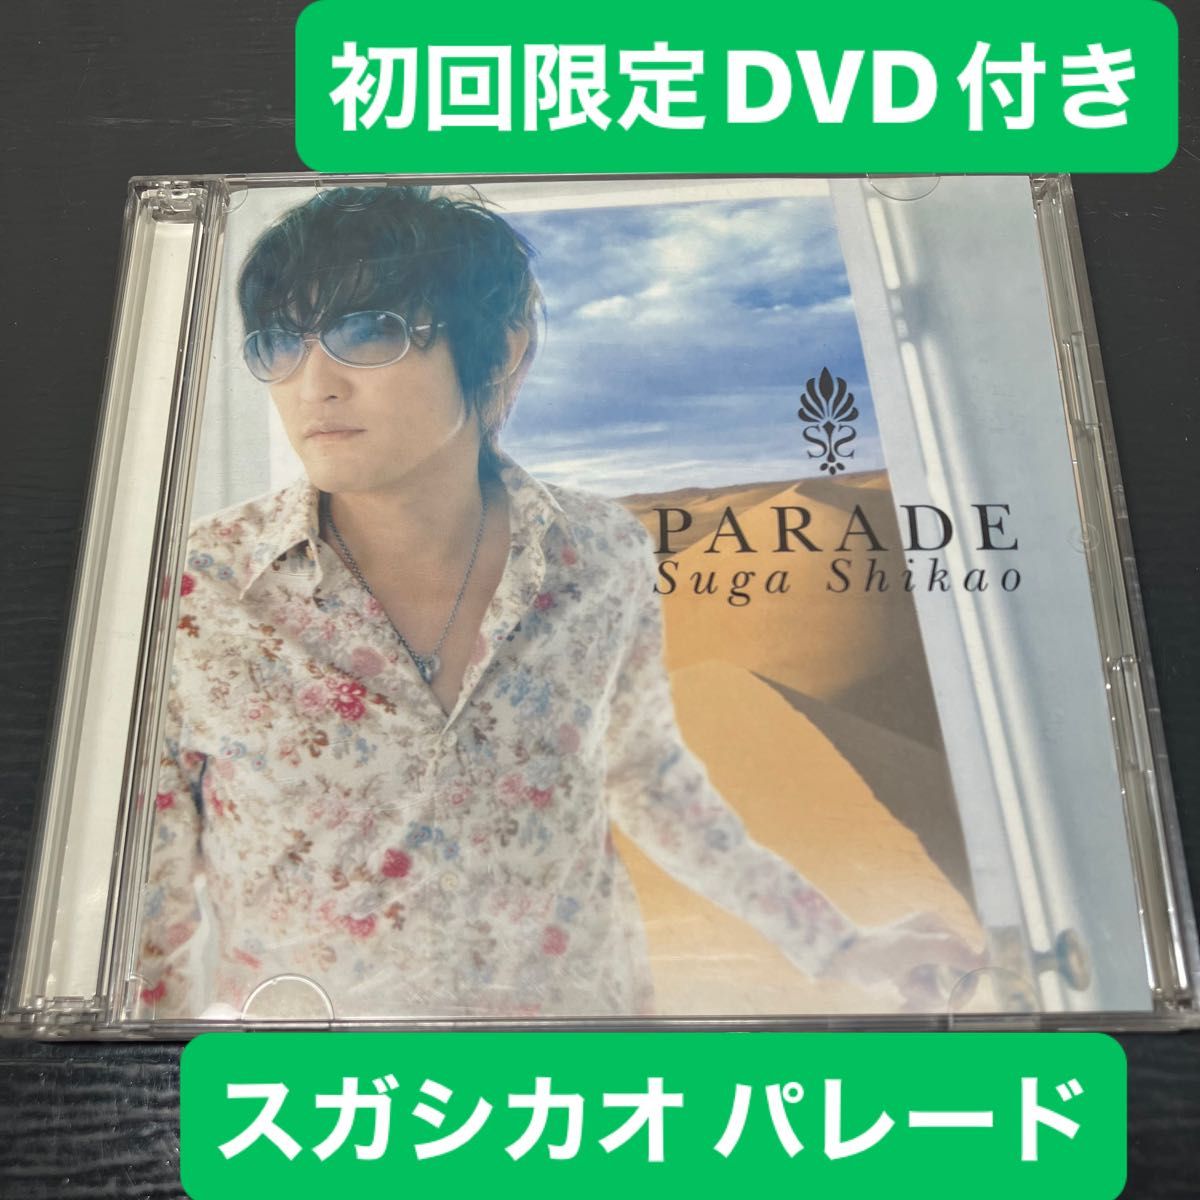 スガシカオ PARADE DVD付 初回限定盤 音楽CD 邦楽 J-POP